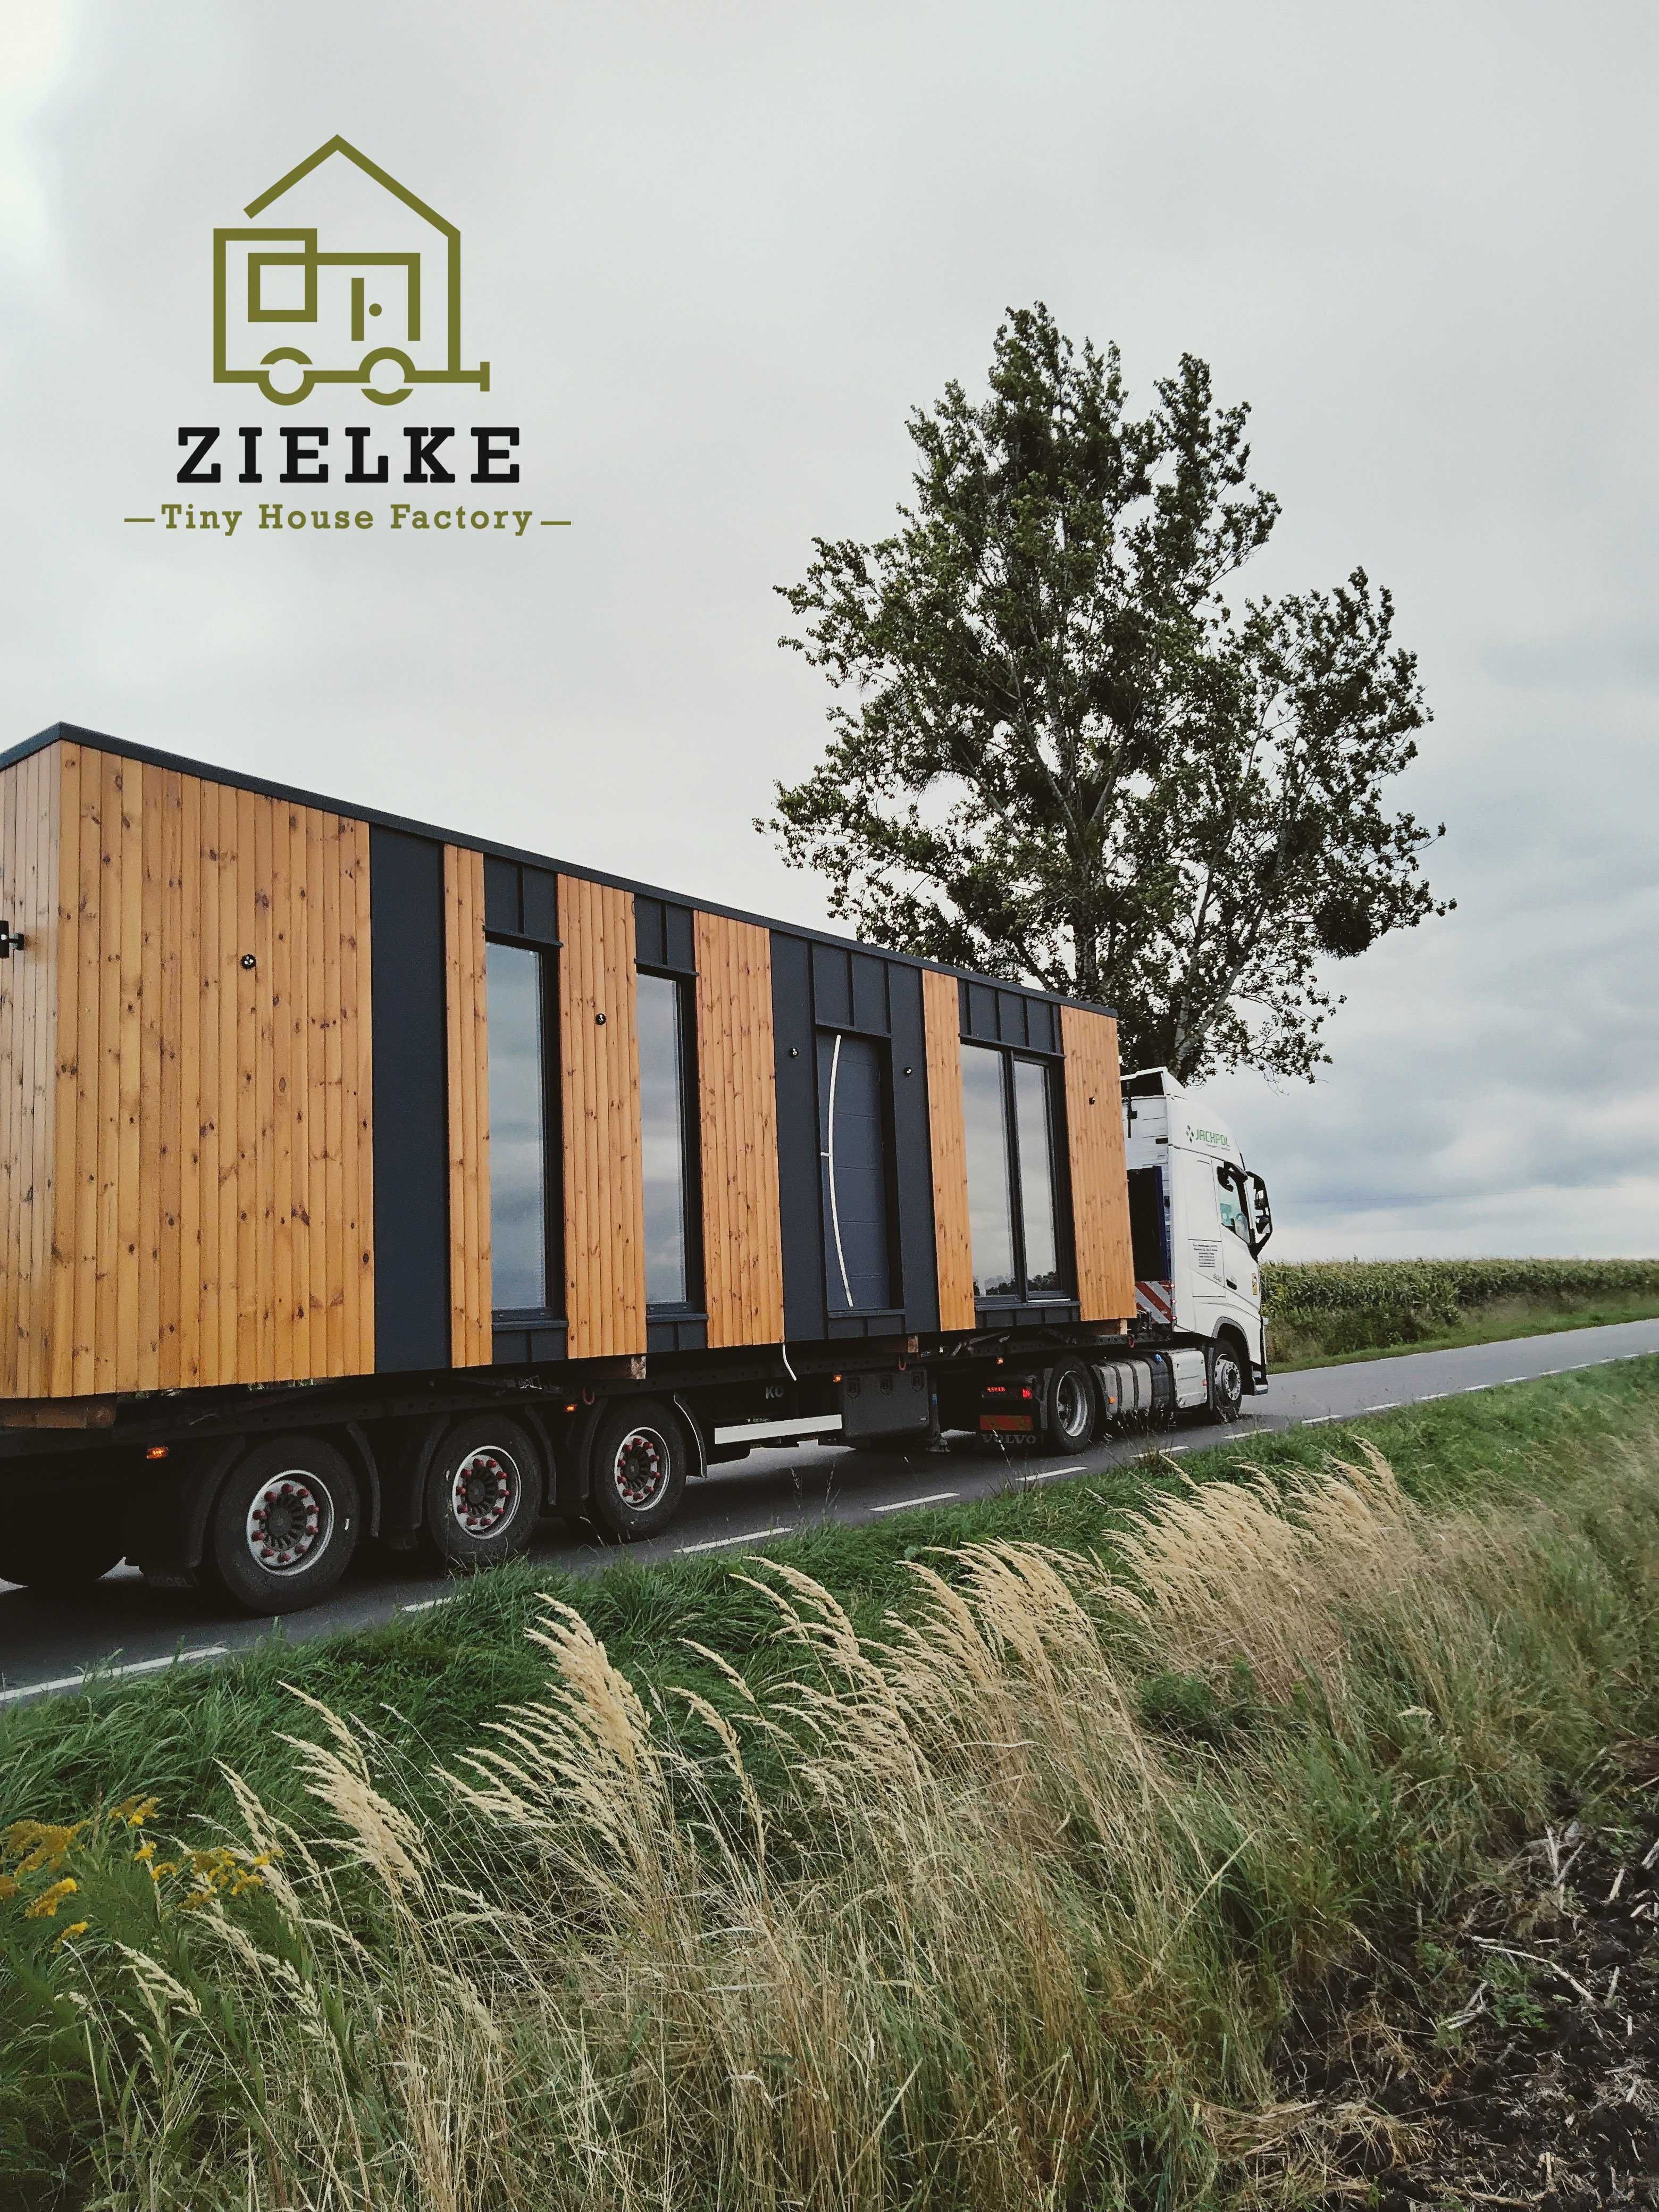 Domek Drewniany Letniskowy Dom Modułowy Mobilny TinyHouse Holenderski